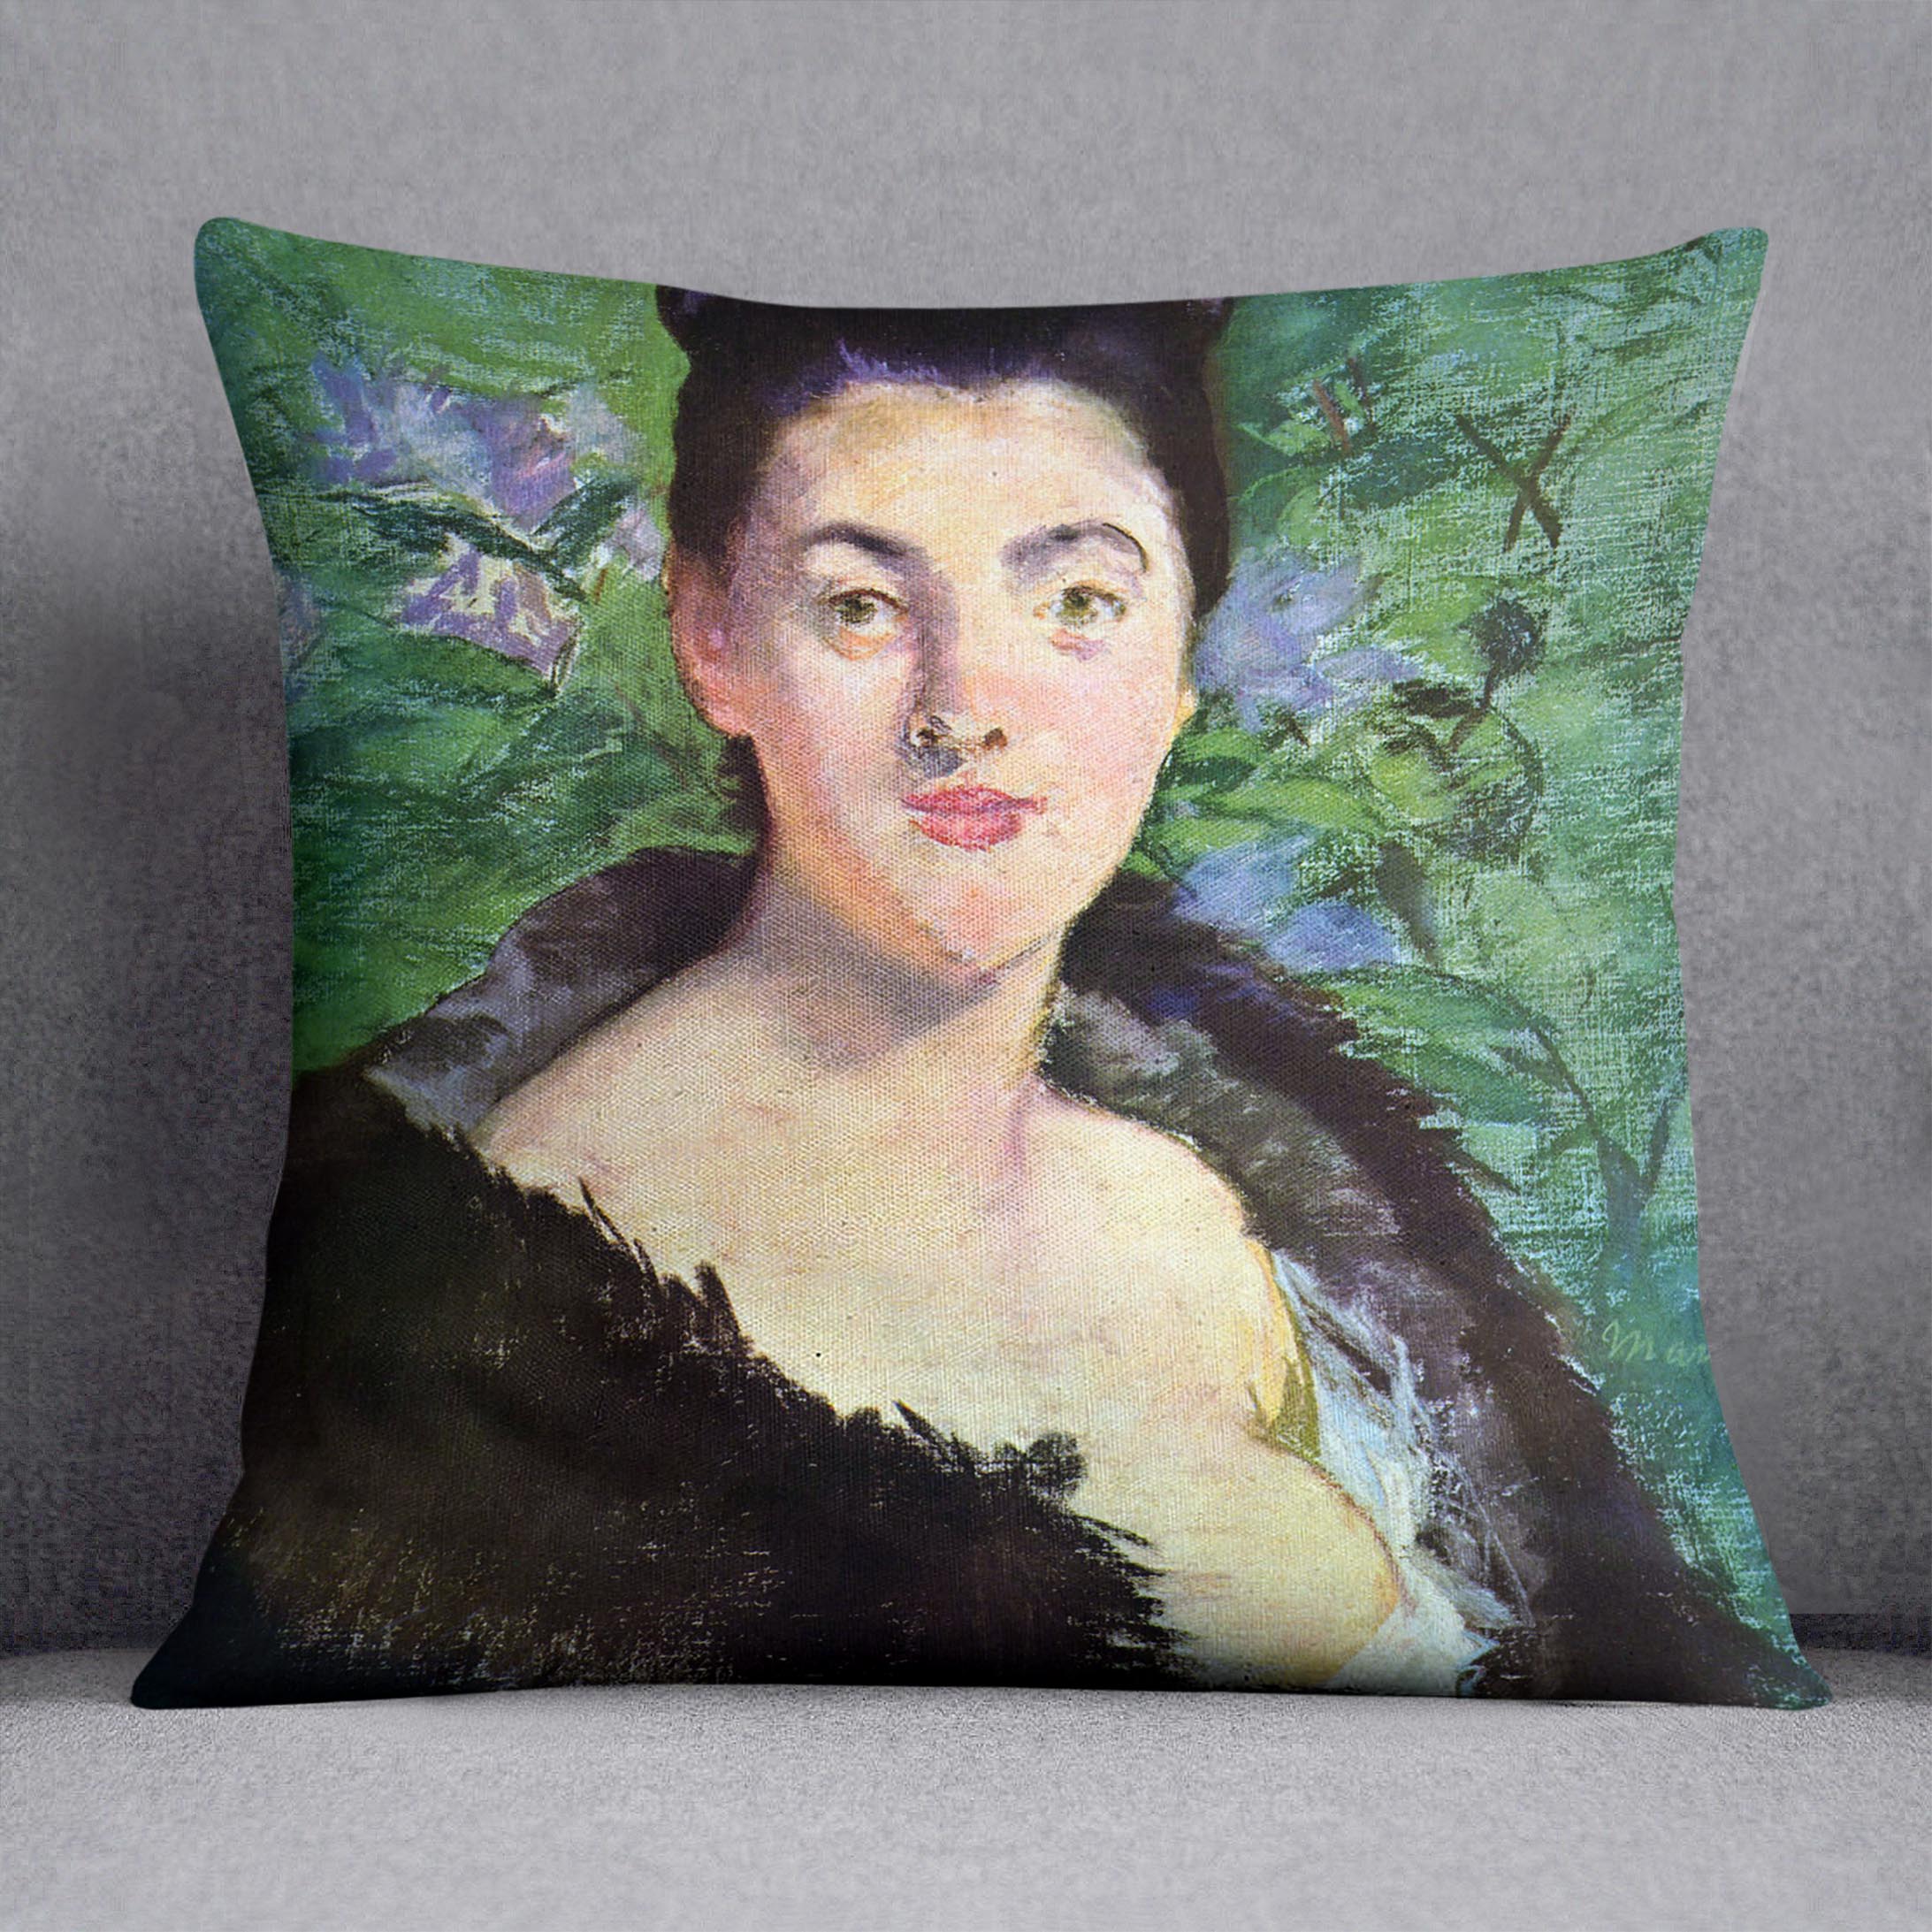 Lady in Fur by Manet Cushion